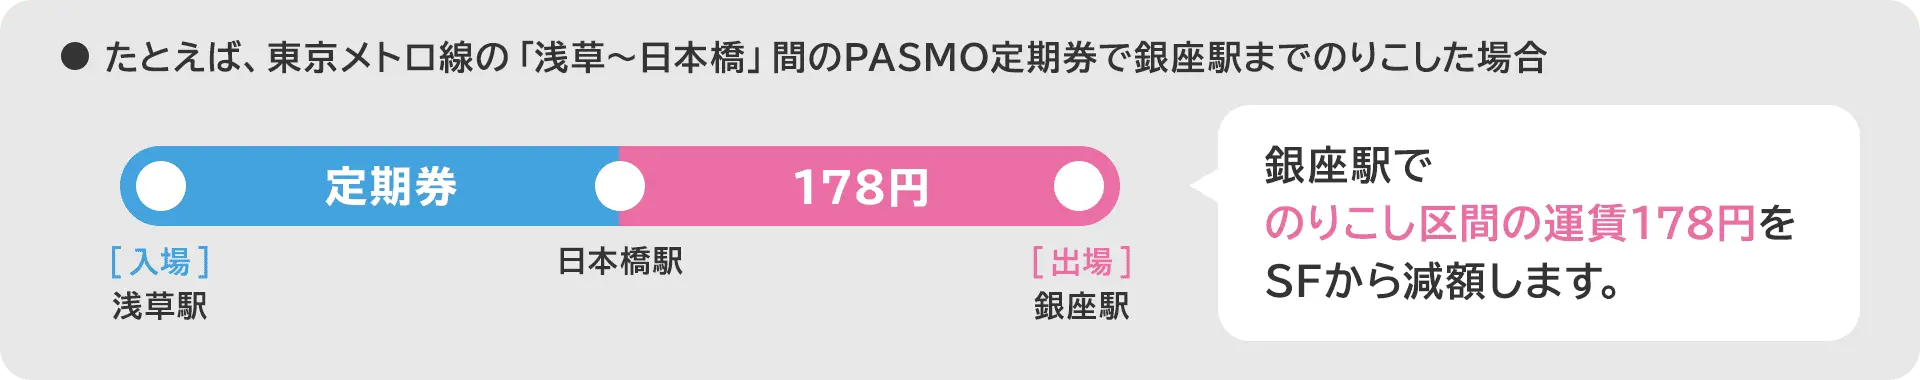 たとえば、東京メトロ線の「浅草〜日本橋」間のPASMO定期券で銀座駅までのりこした場合、銀座駅でのりこし区間の運賃178円をSFから減額します。